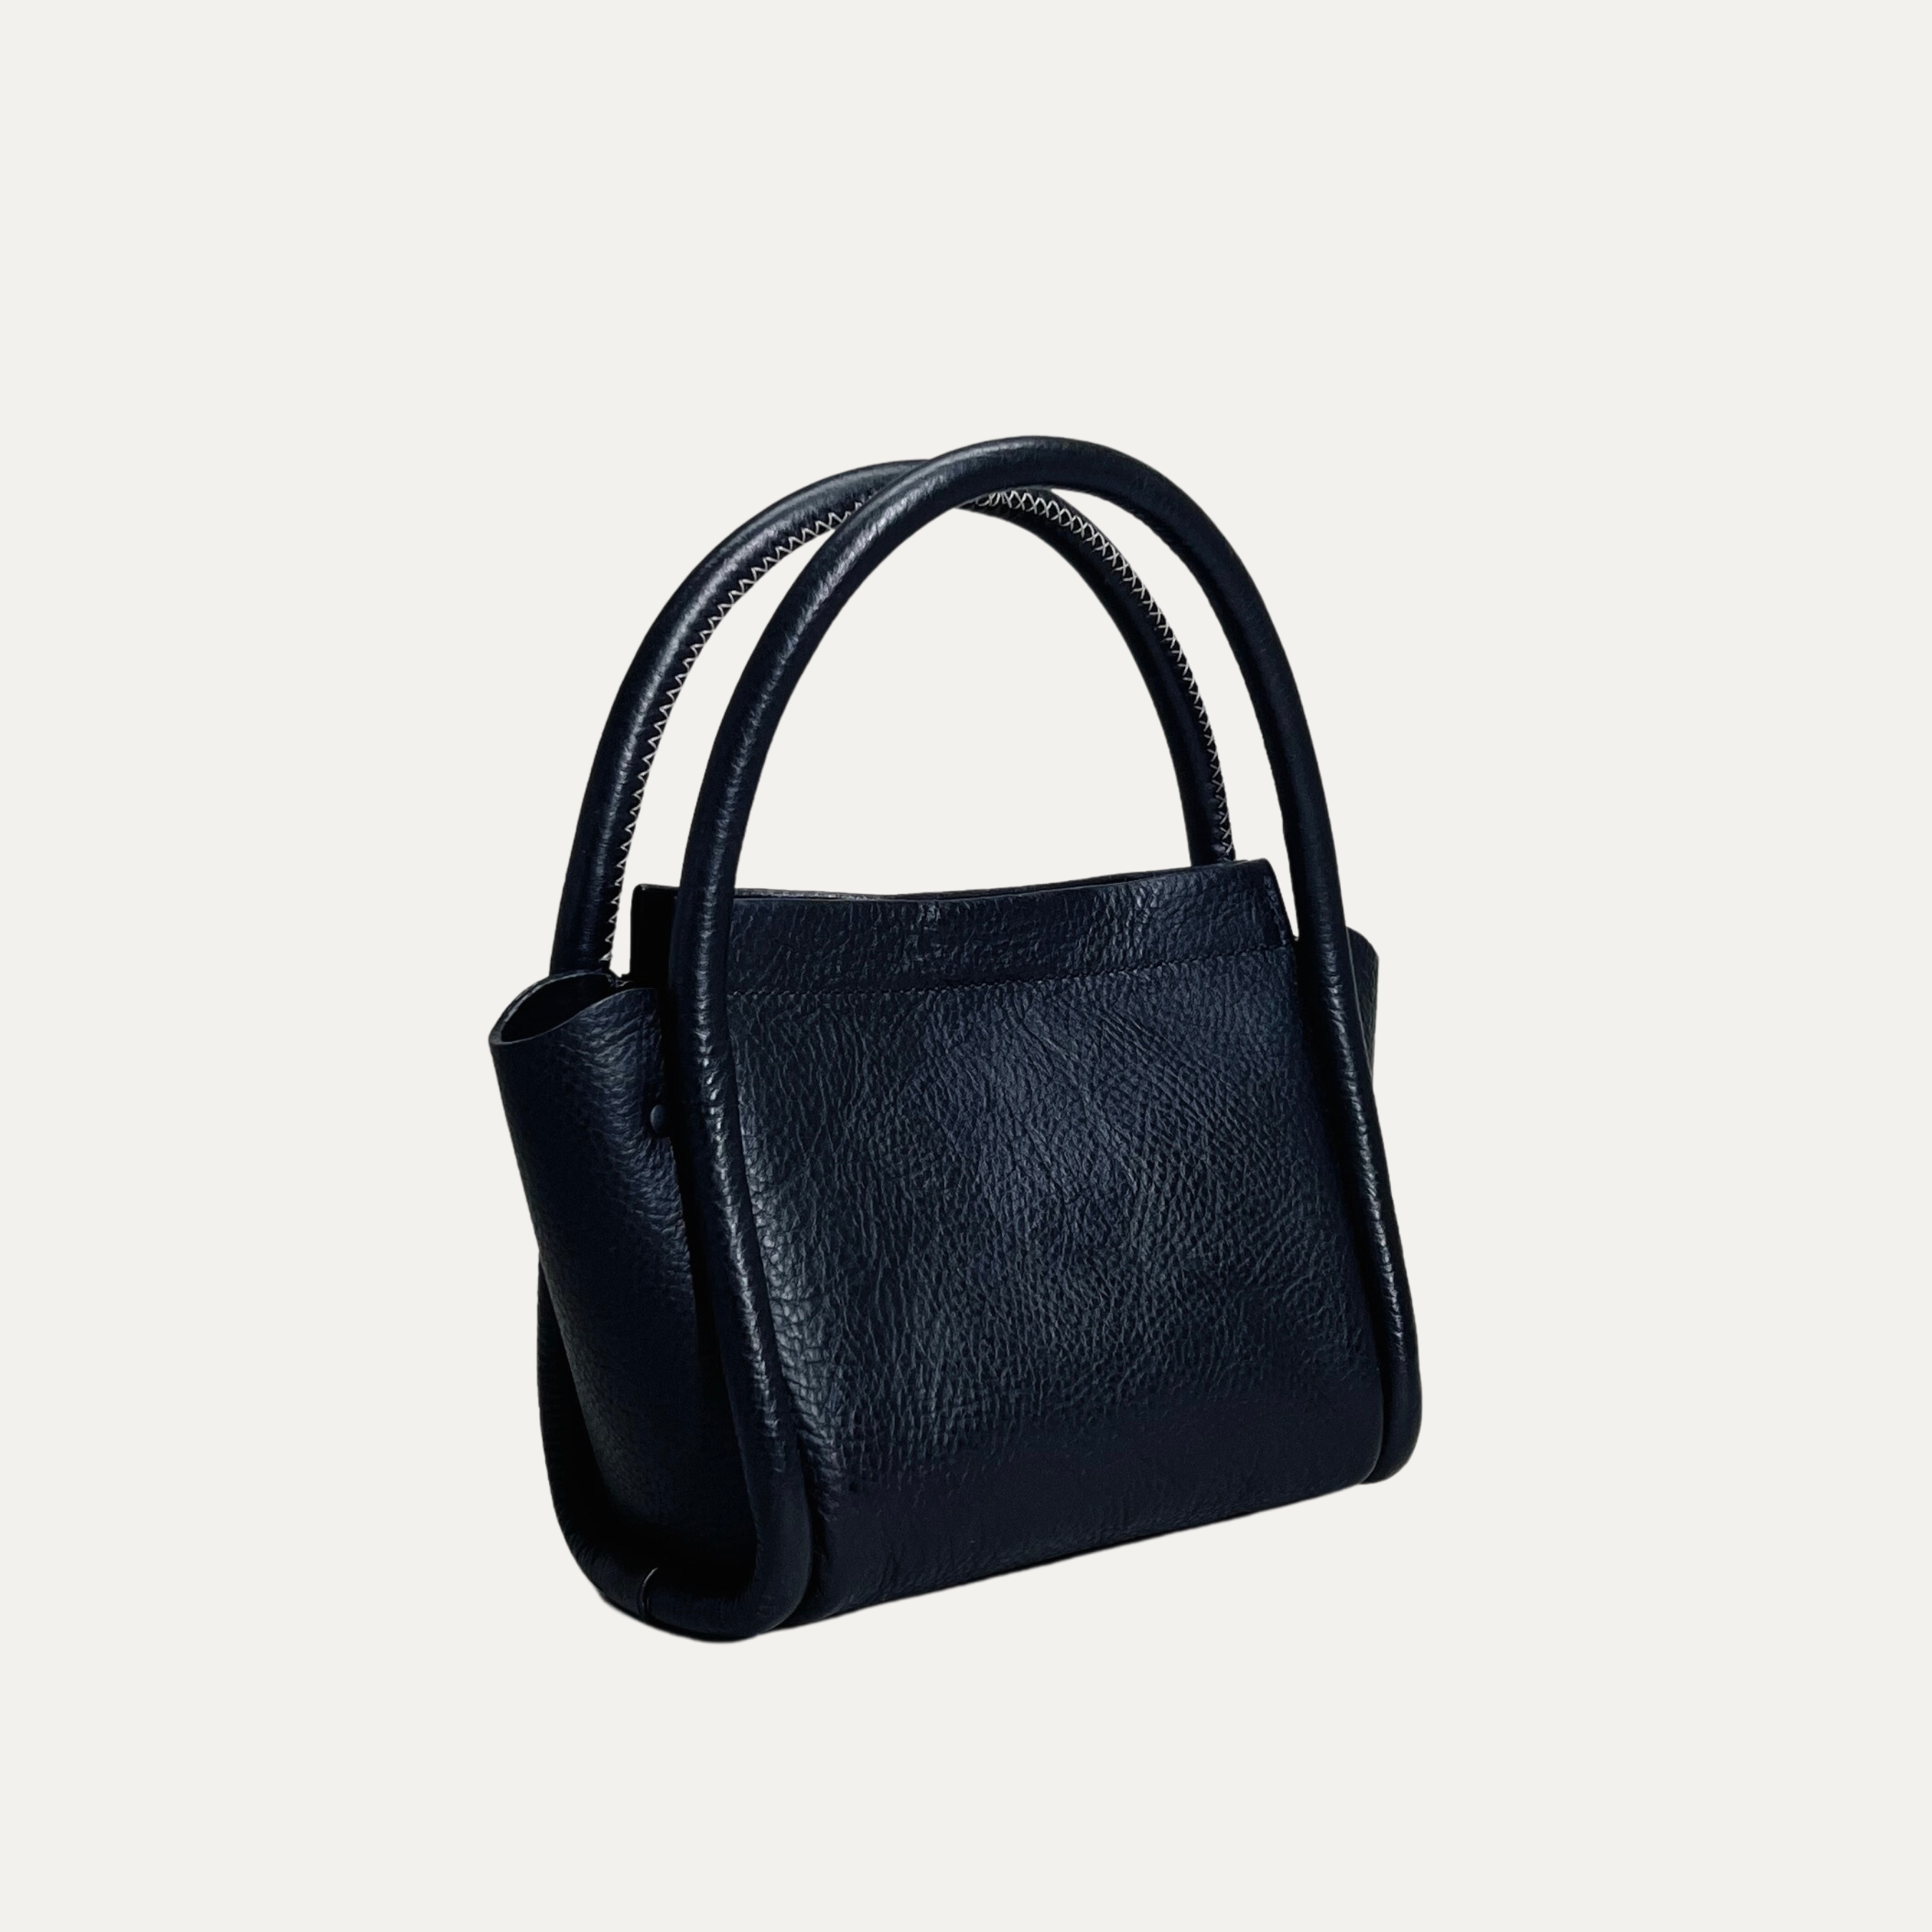 Luxury Pebbled Black Leather Handbag made in Australia